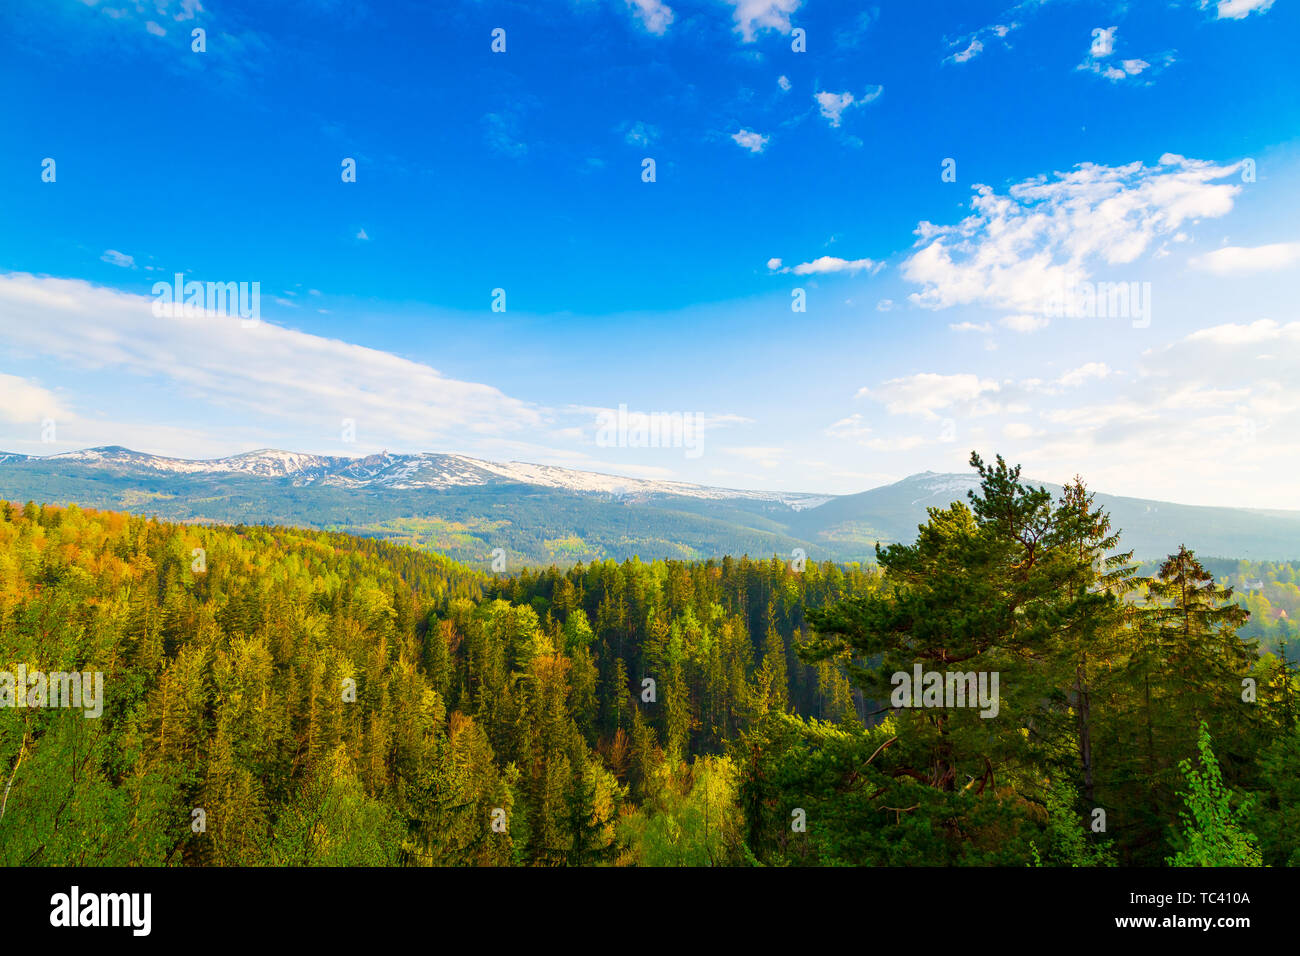 Scenic printemps paysage des monts des Géants - Mounatains Karkonosze, Pologne Banque D'Images